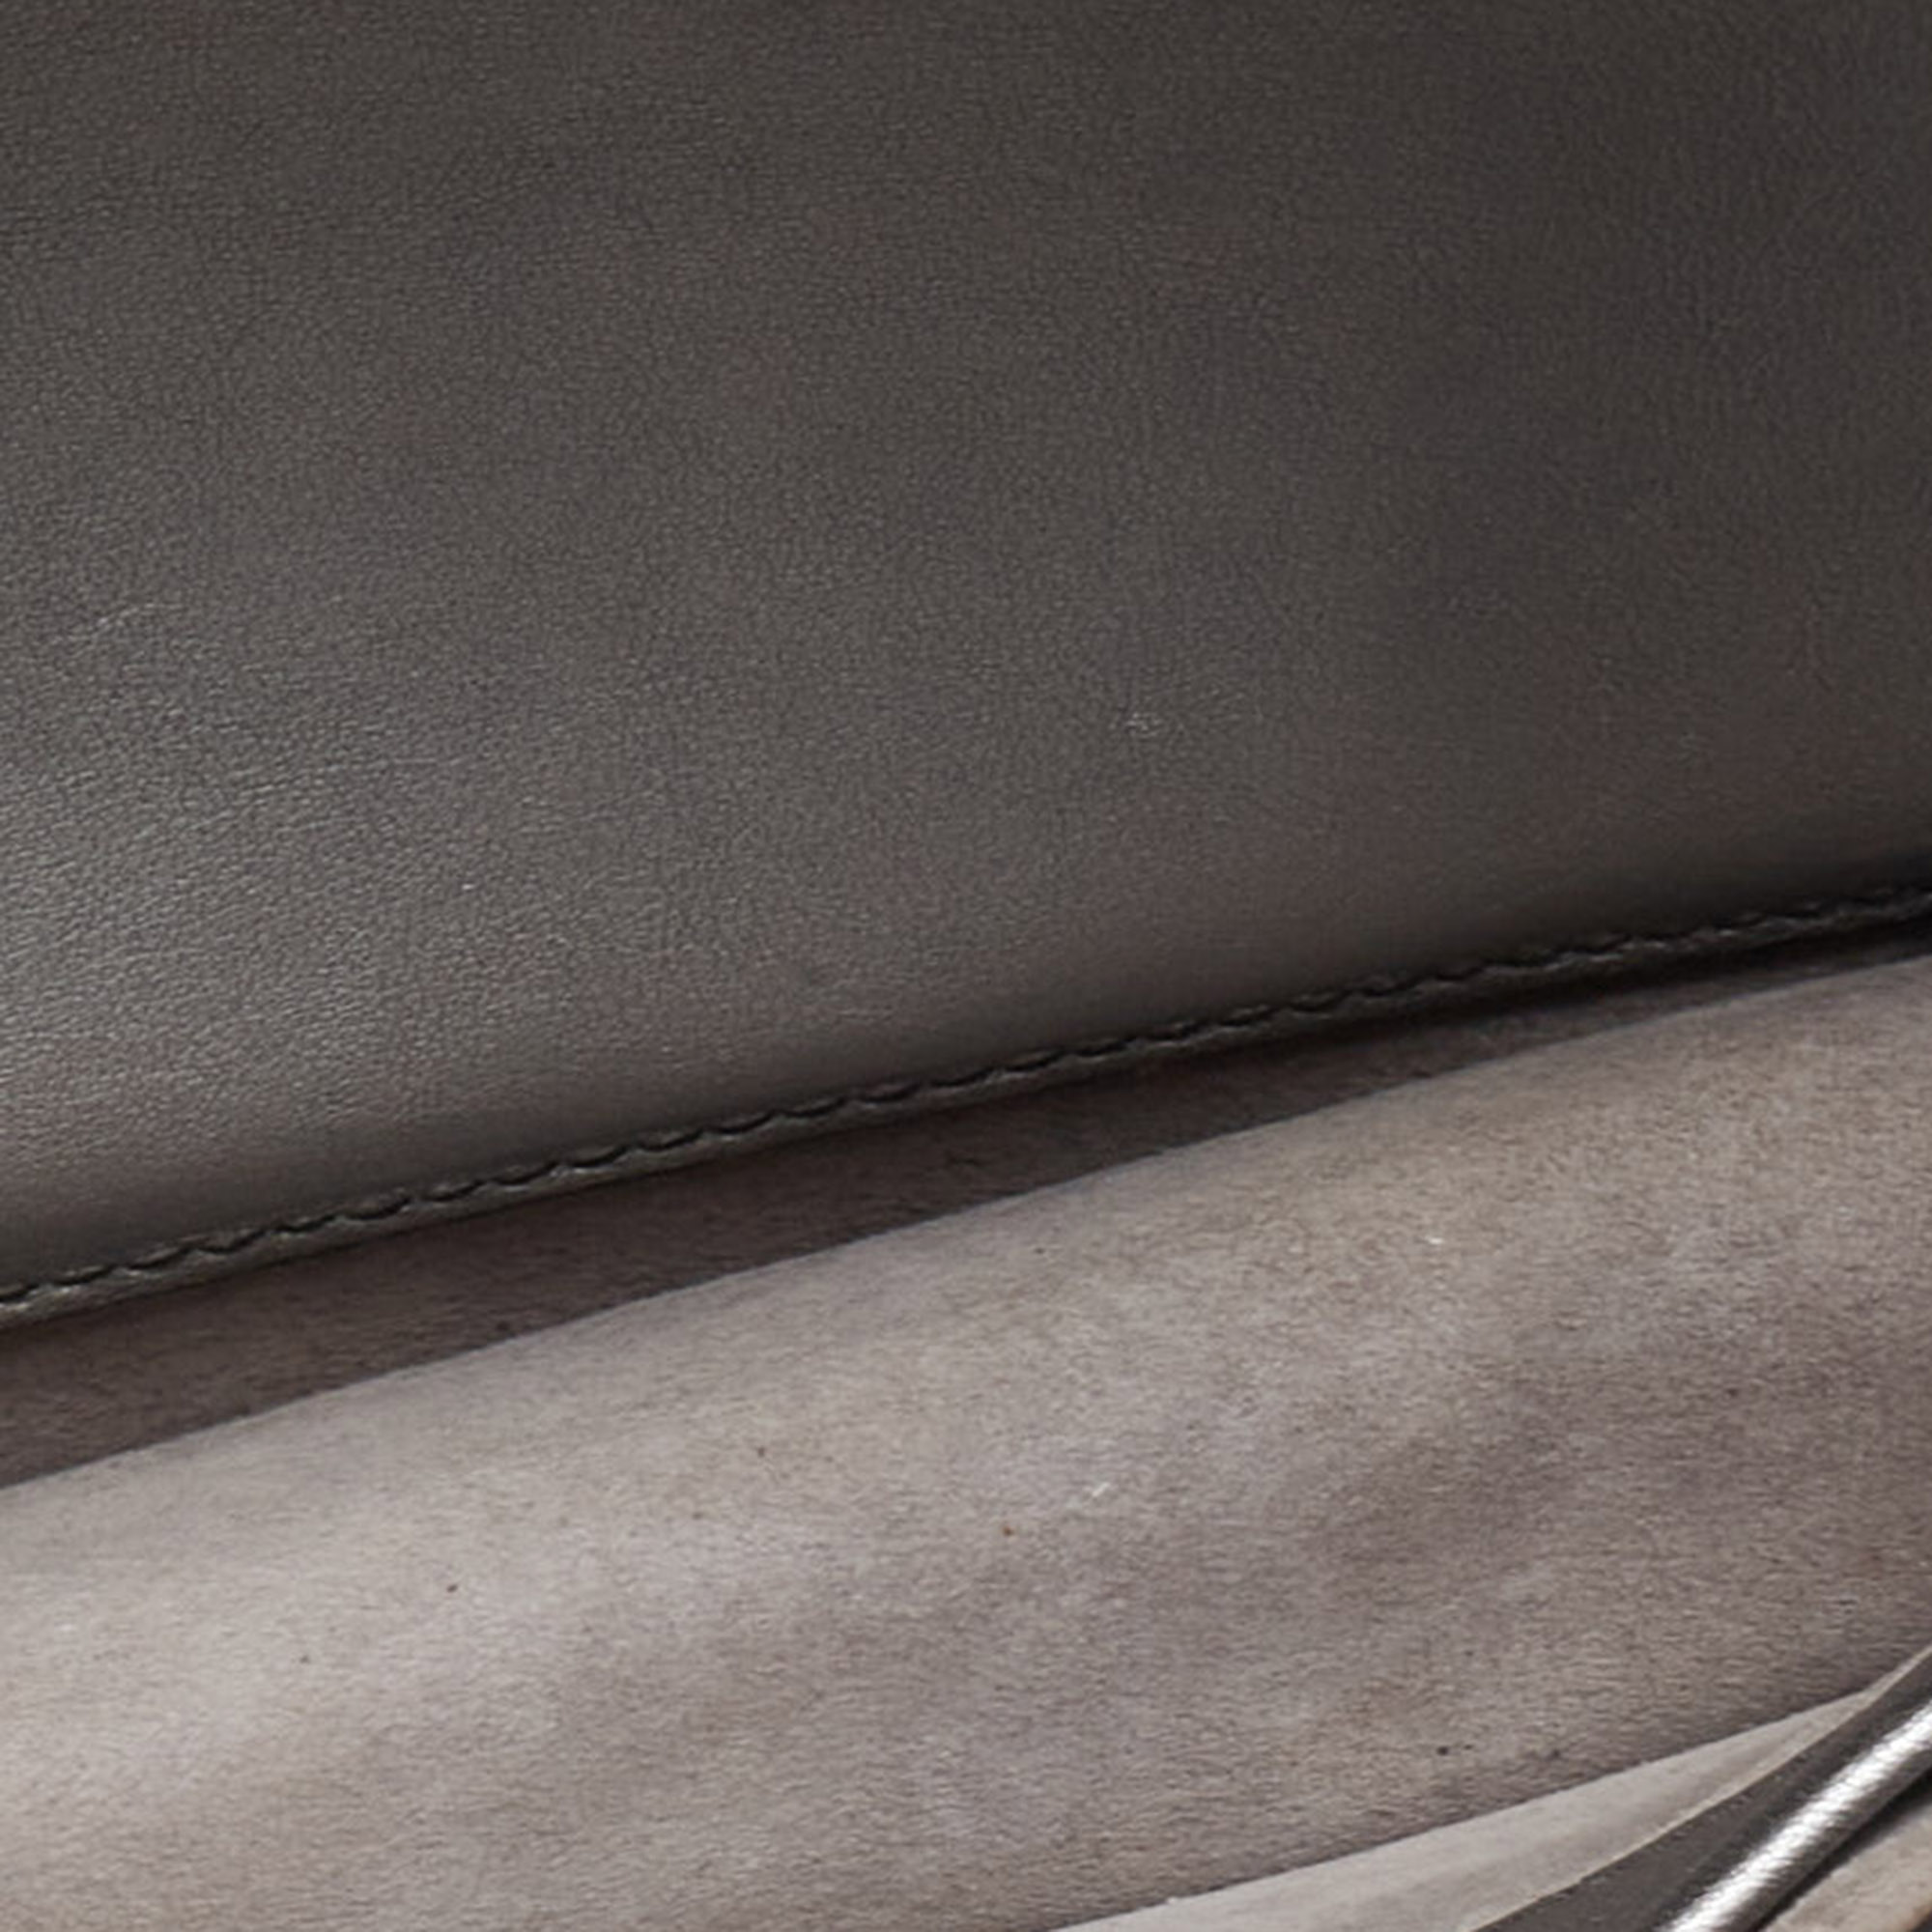 Dior Silver Leather J’adior Flap Shoulder Bag